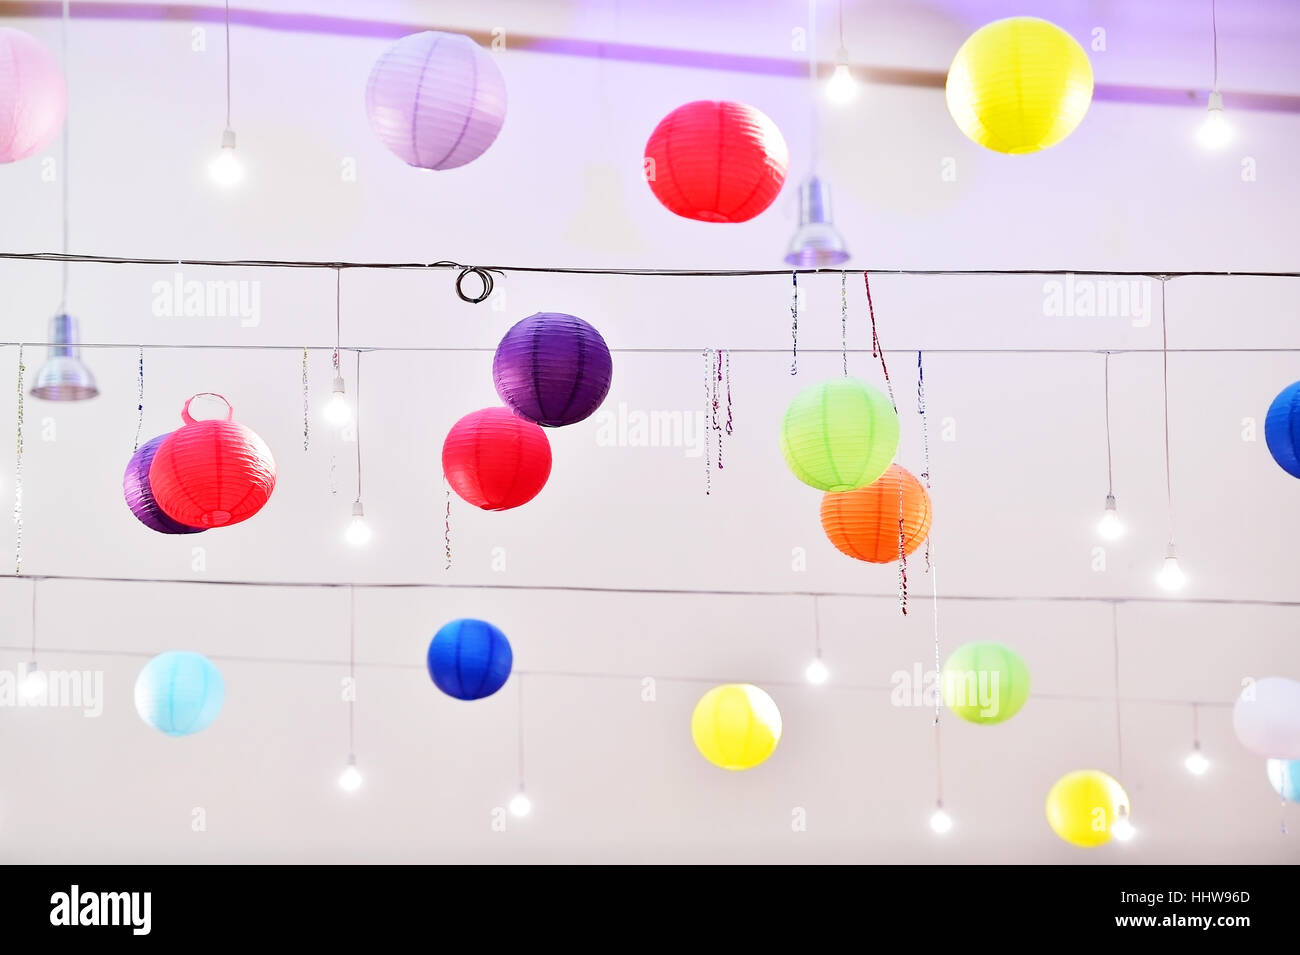 Lampions lanterne colorée accrochée à un événement de divertissement pendant au plafond Banque D'Images